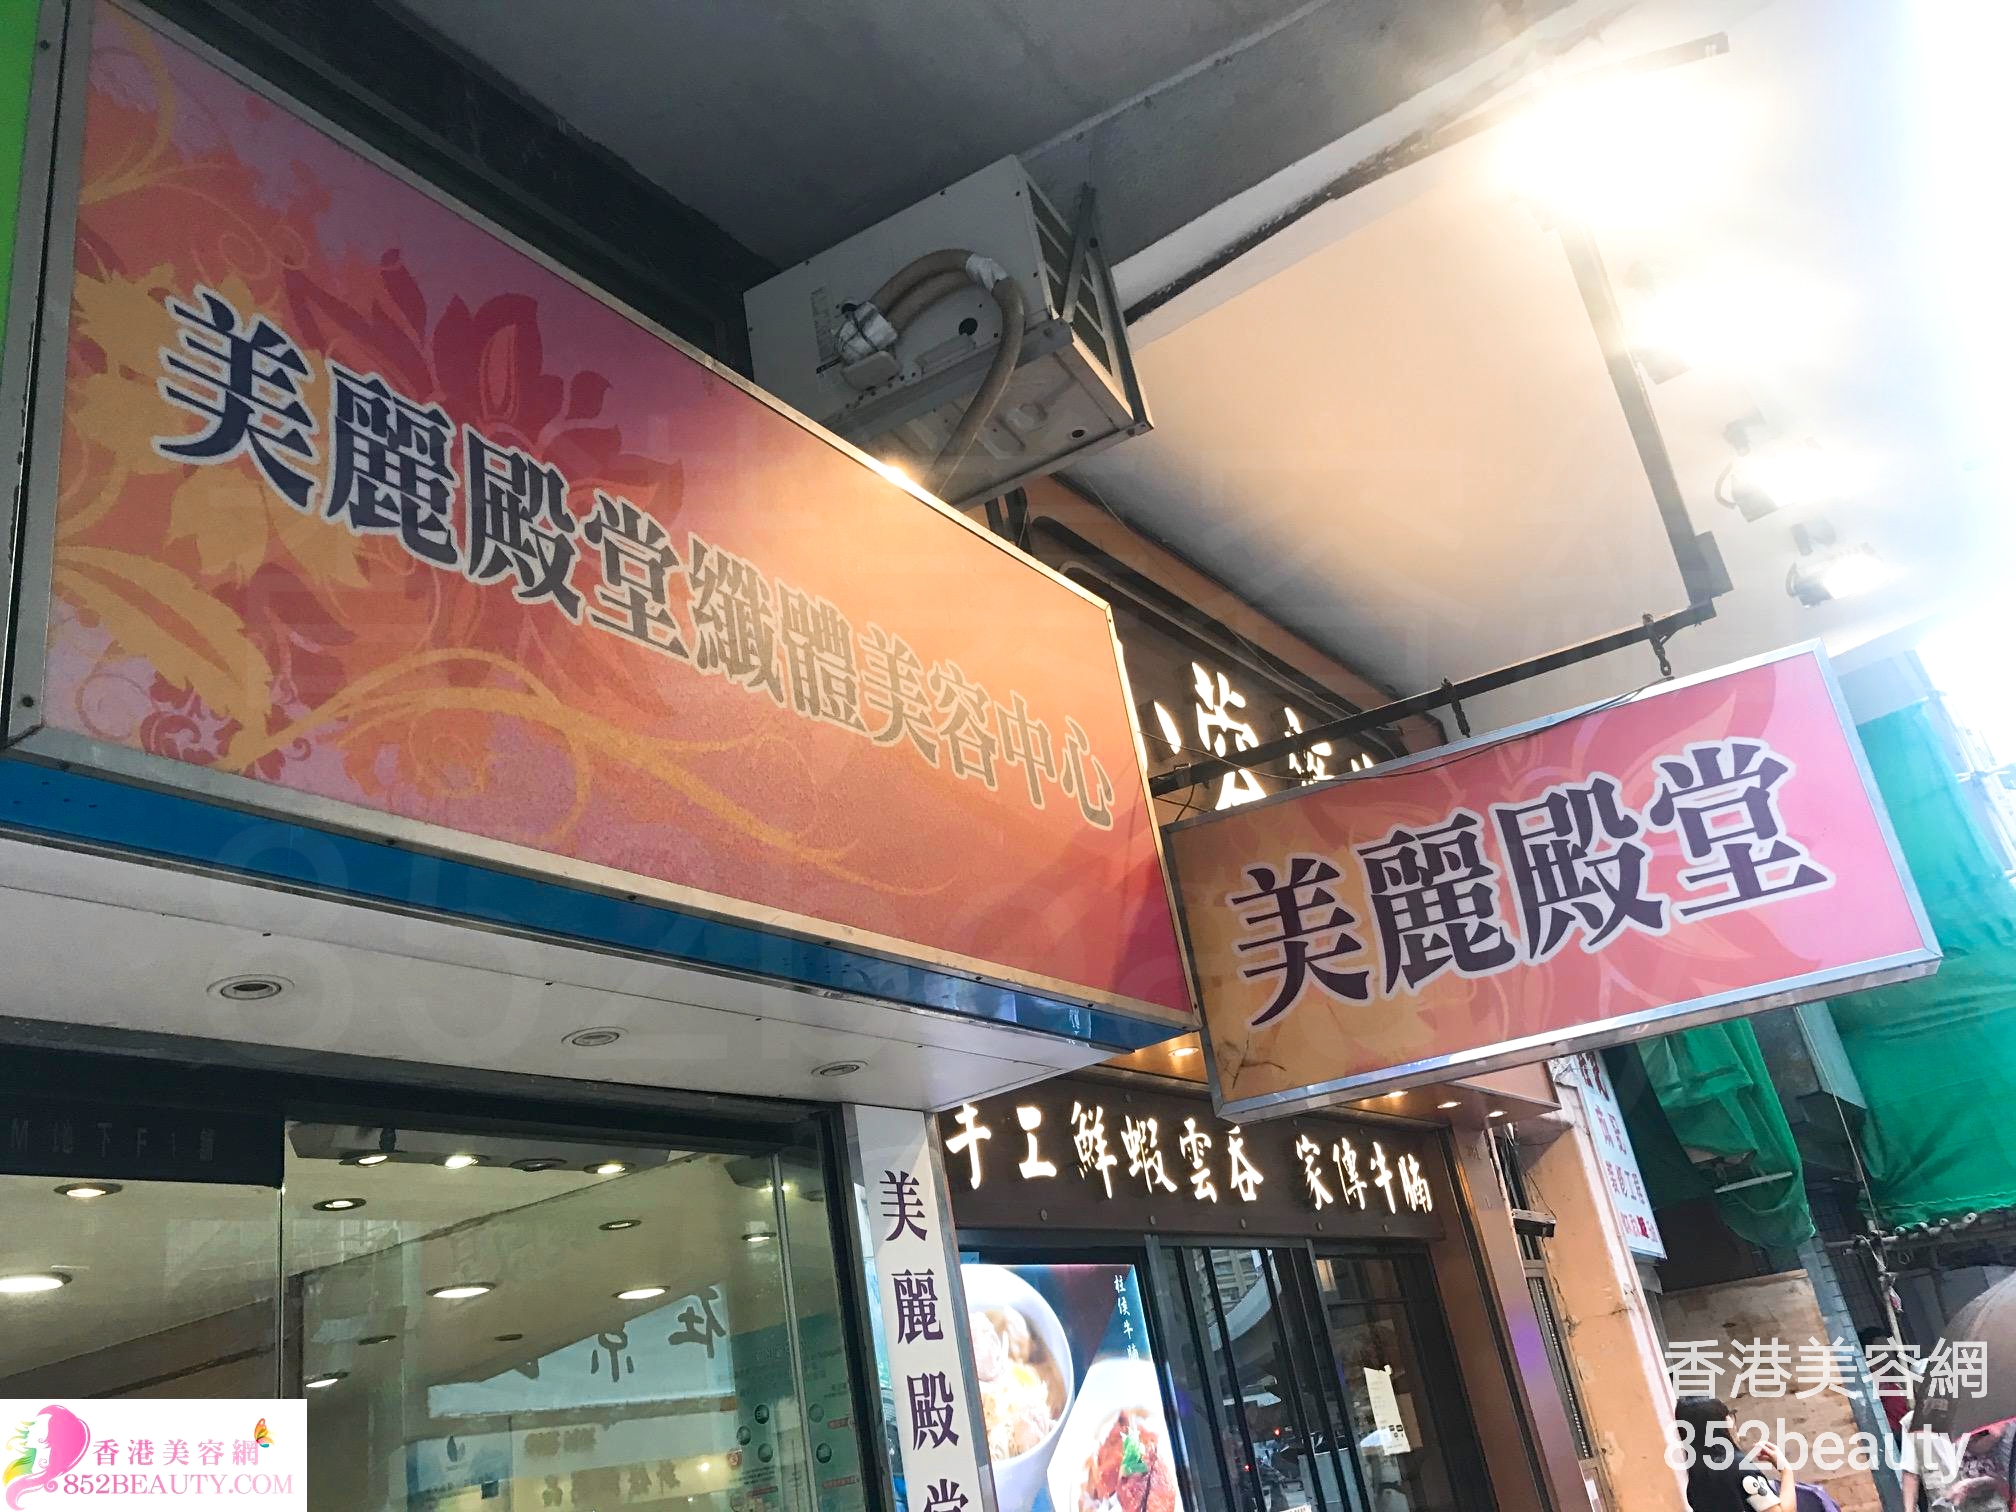 香港美容網 Hong Kong Beauty Salon 美容院 / 美容師: 美麗殿堂纖體美容中心